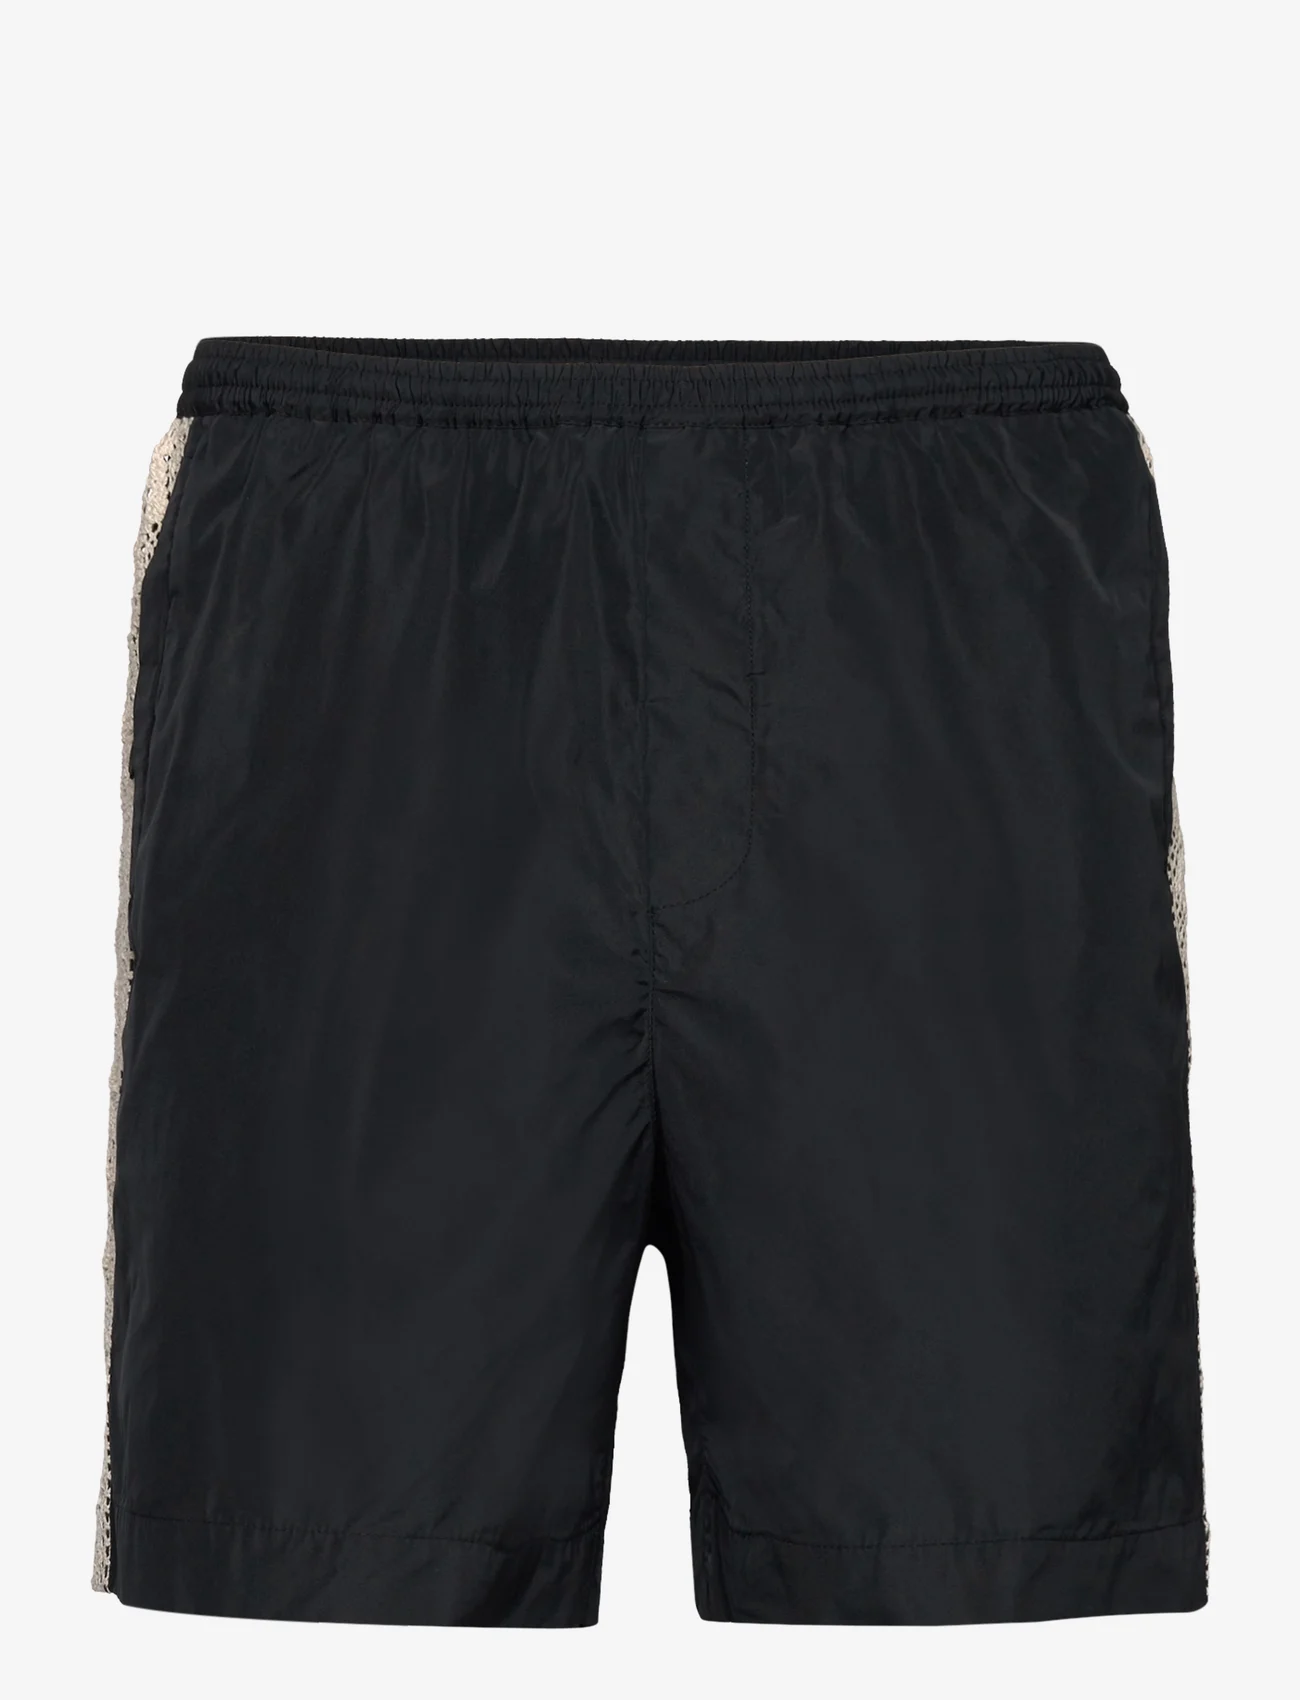 Wood Wood - Robson Tech Shorts - casual shorts - black - 0